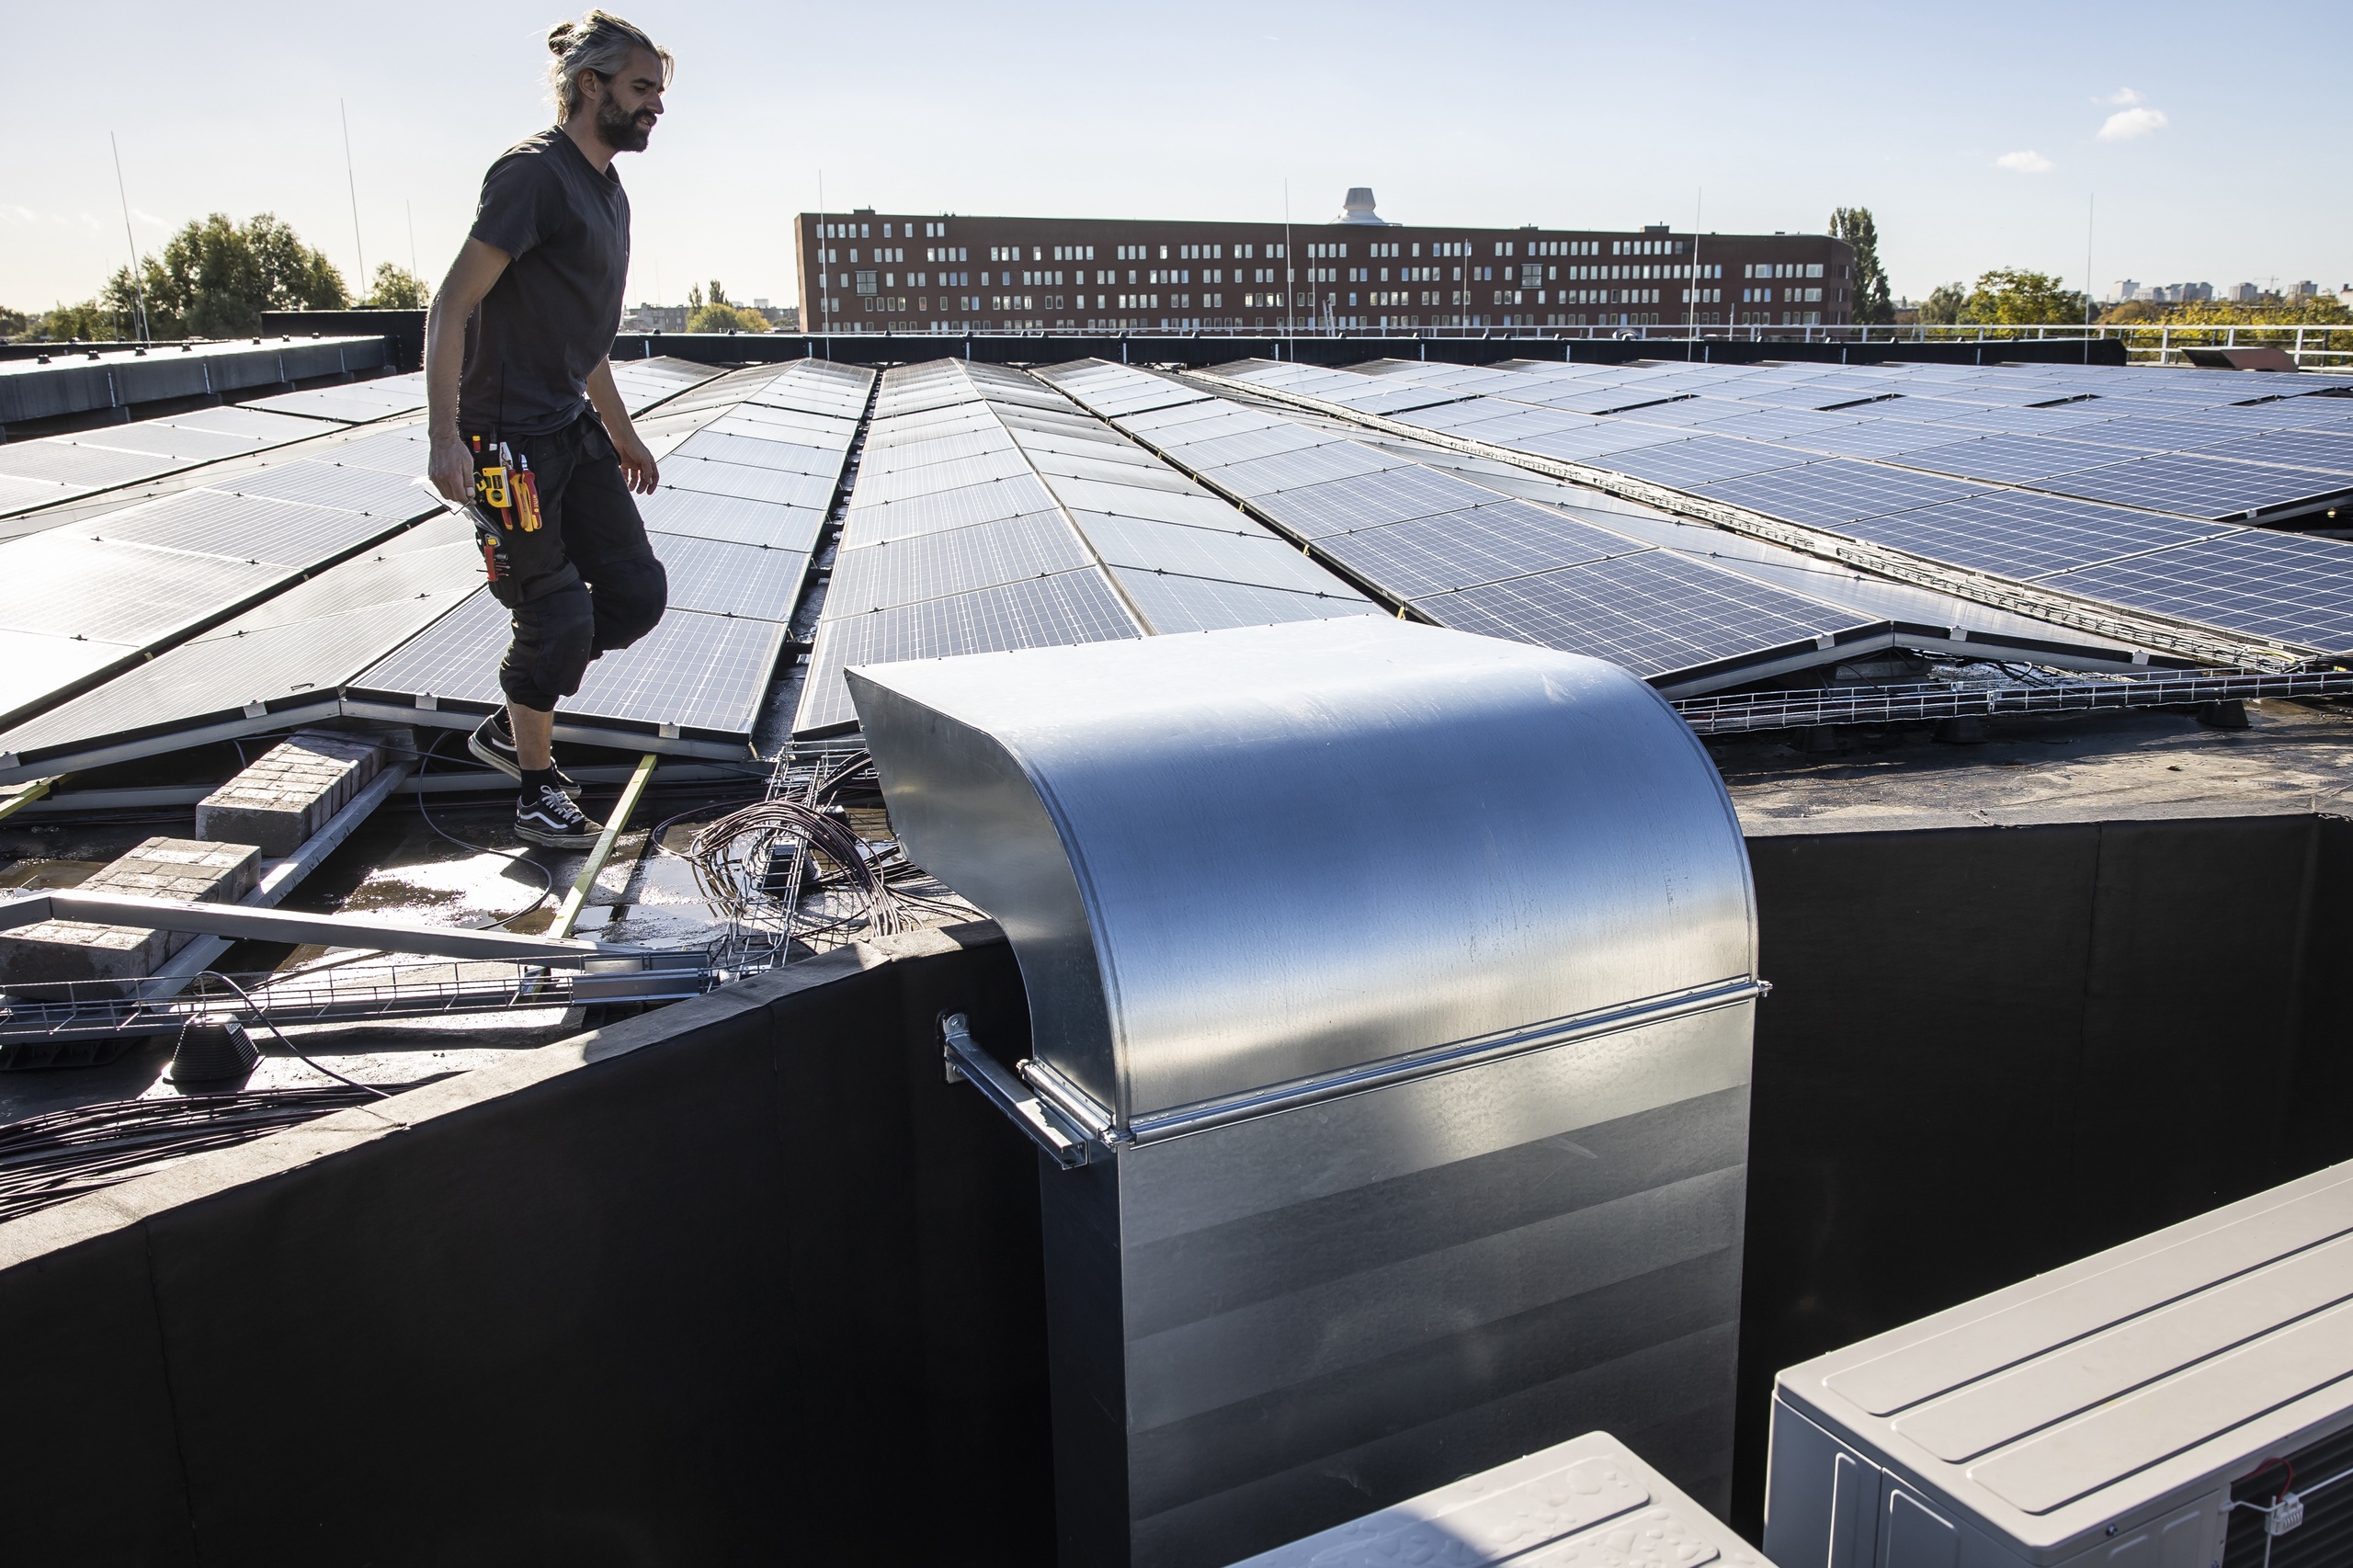 Op het dak van de Gashouder op het Westergasfabrieksterrein in Amsterdam zijn 200 zonnepanelen geplaatst naast al eerder geplaatste exemplaren. Ook is er een warmtepomp-installatie aangelegd.